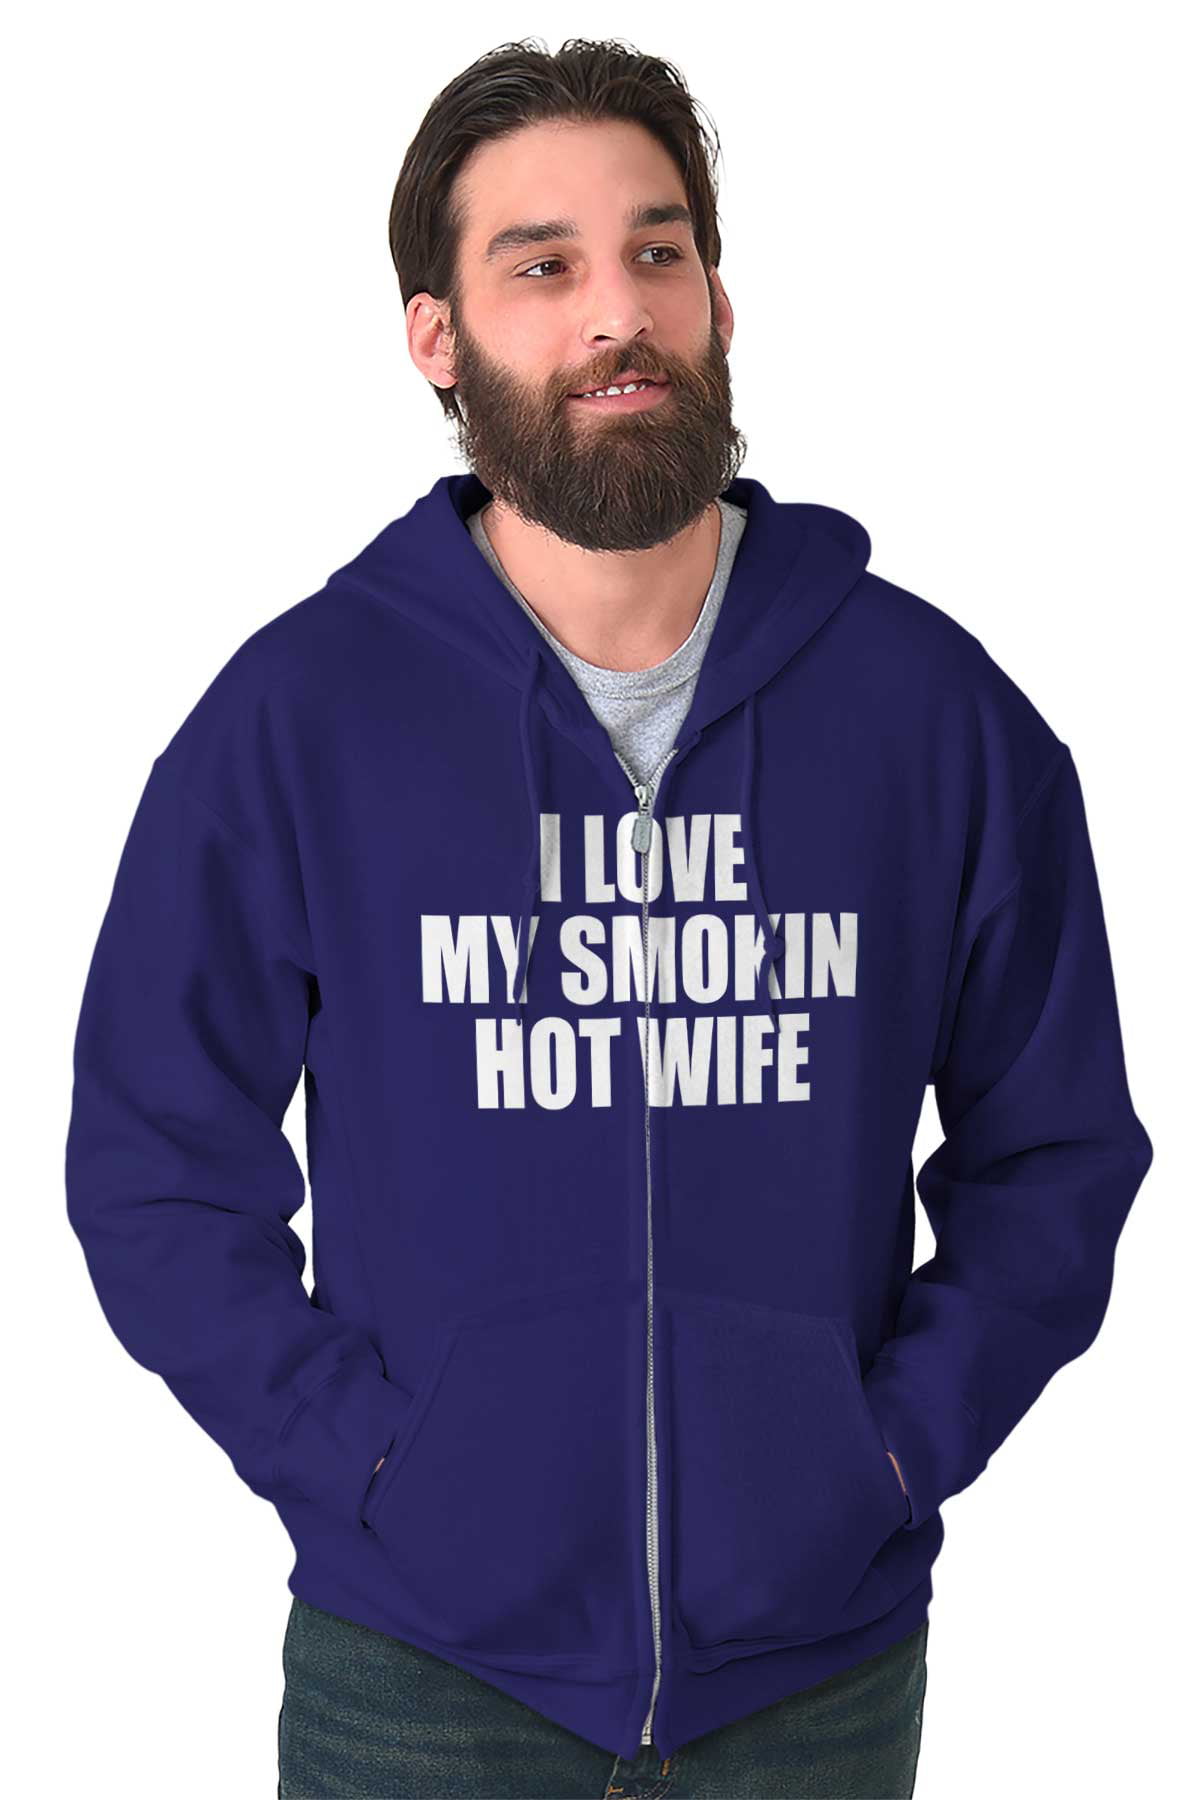 Wife fishing Hoody Sweatshirt 